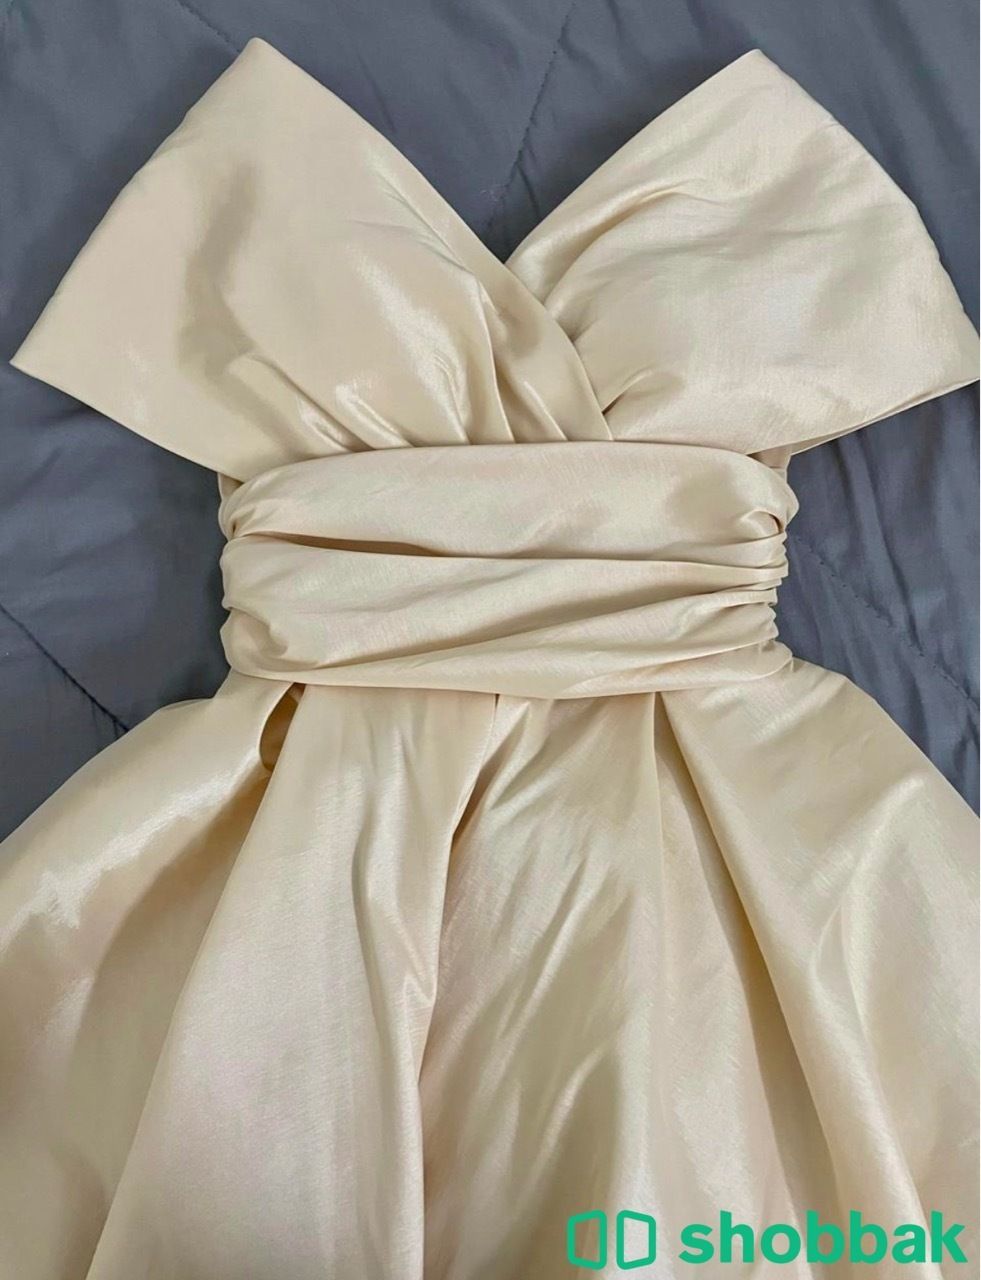 فستان عرس مستعمل نظيف Shobbak Saudi Arabia